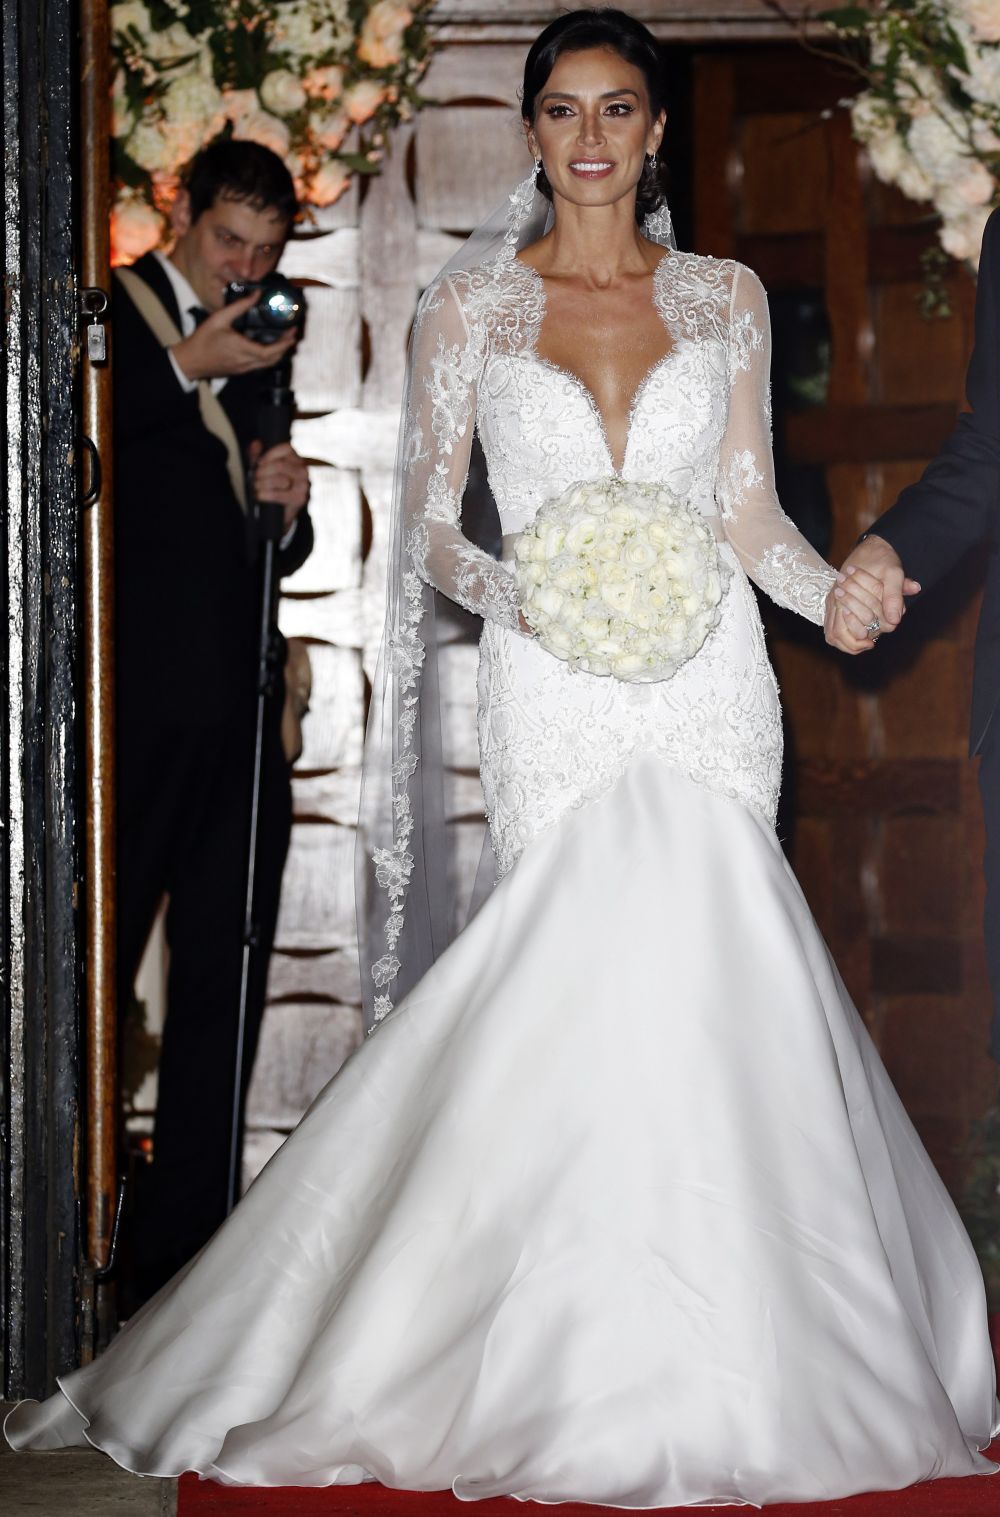 Rochia de mireasa de 10.000 de lire in care sotia lui Frank Lampard a stralucit la nunta. Cat de bine au aratat cei doi